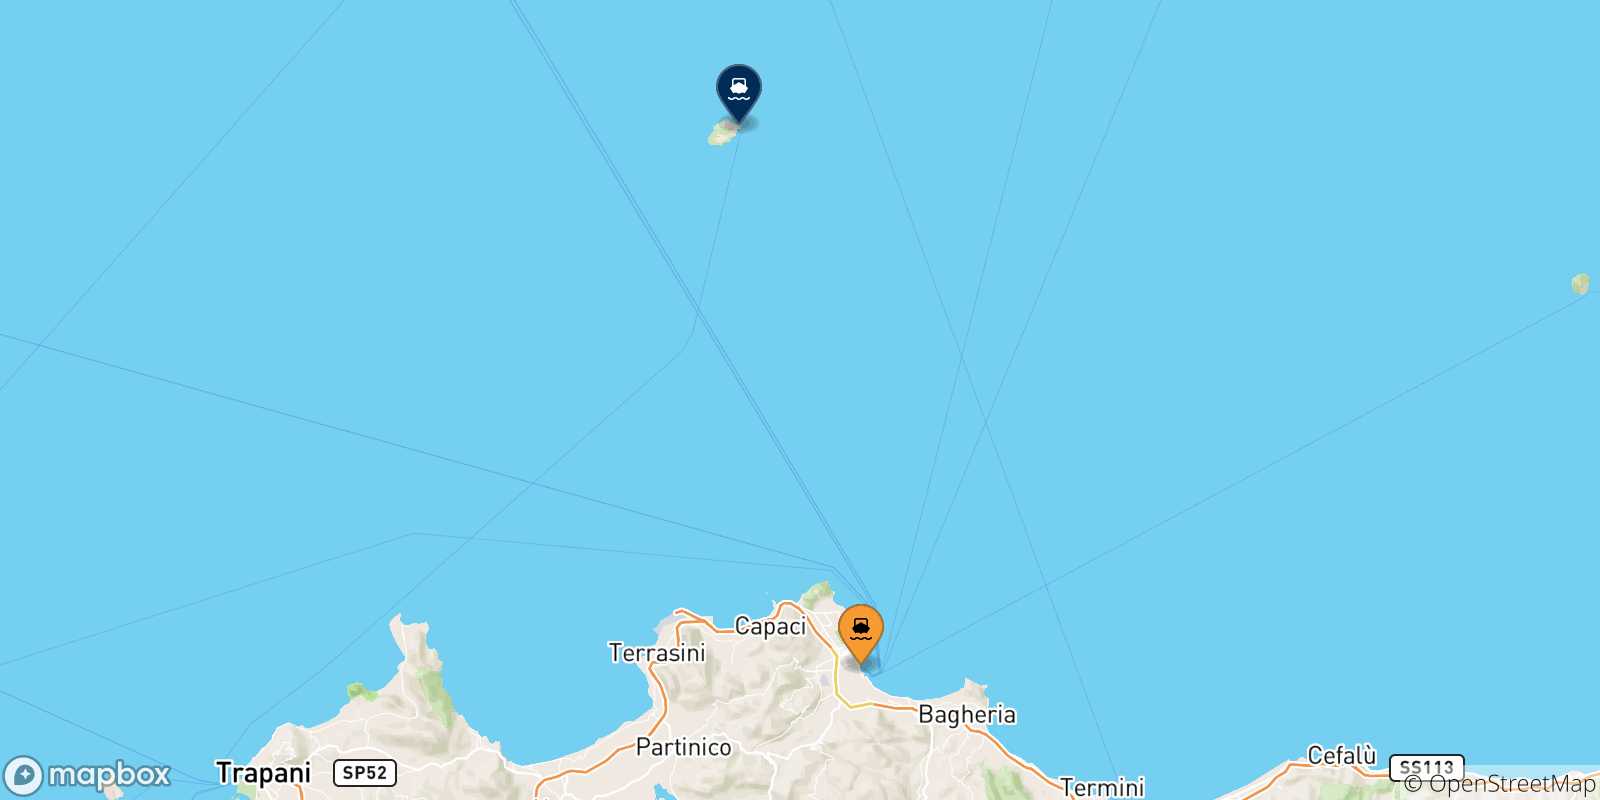 Mappa delle possibili rotte tra l'Italia e l'Isola Di Ustica